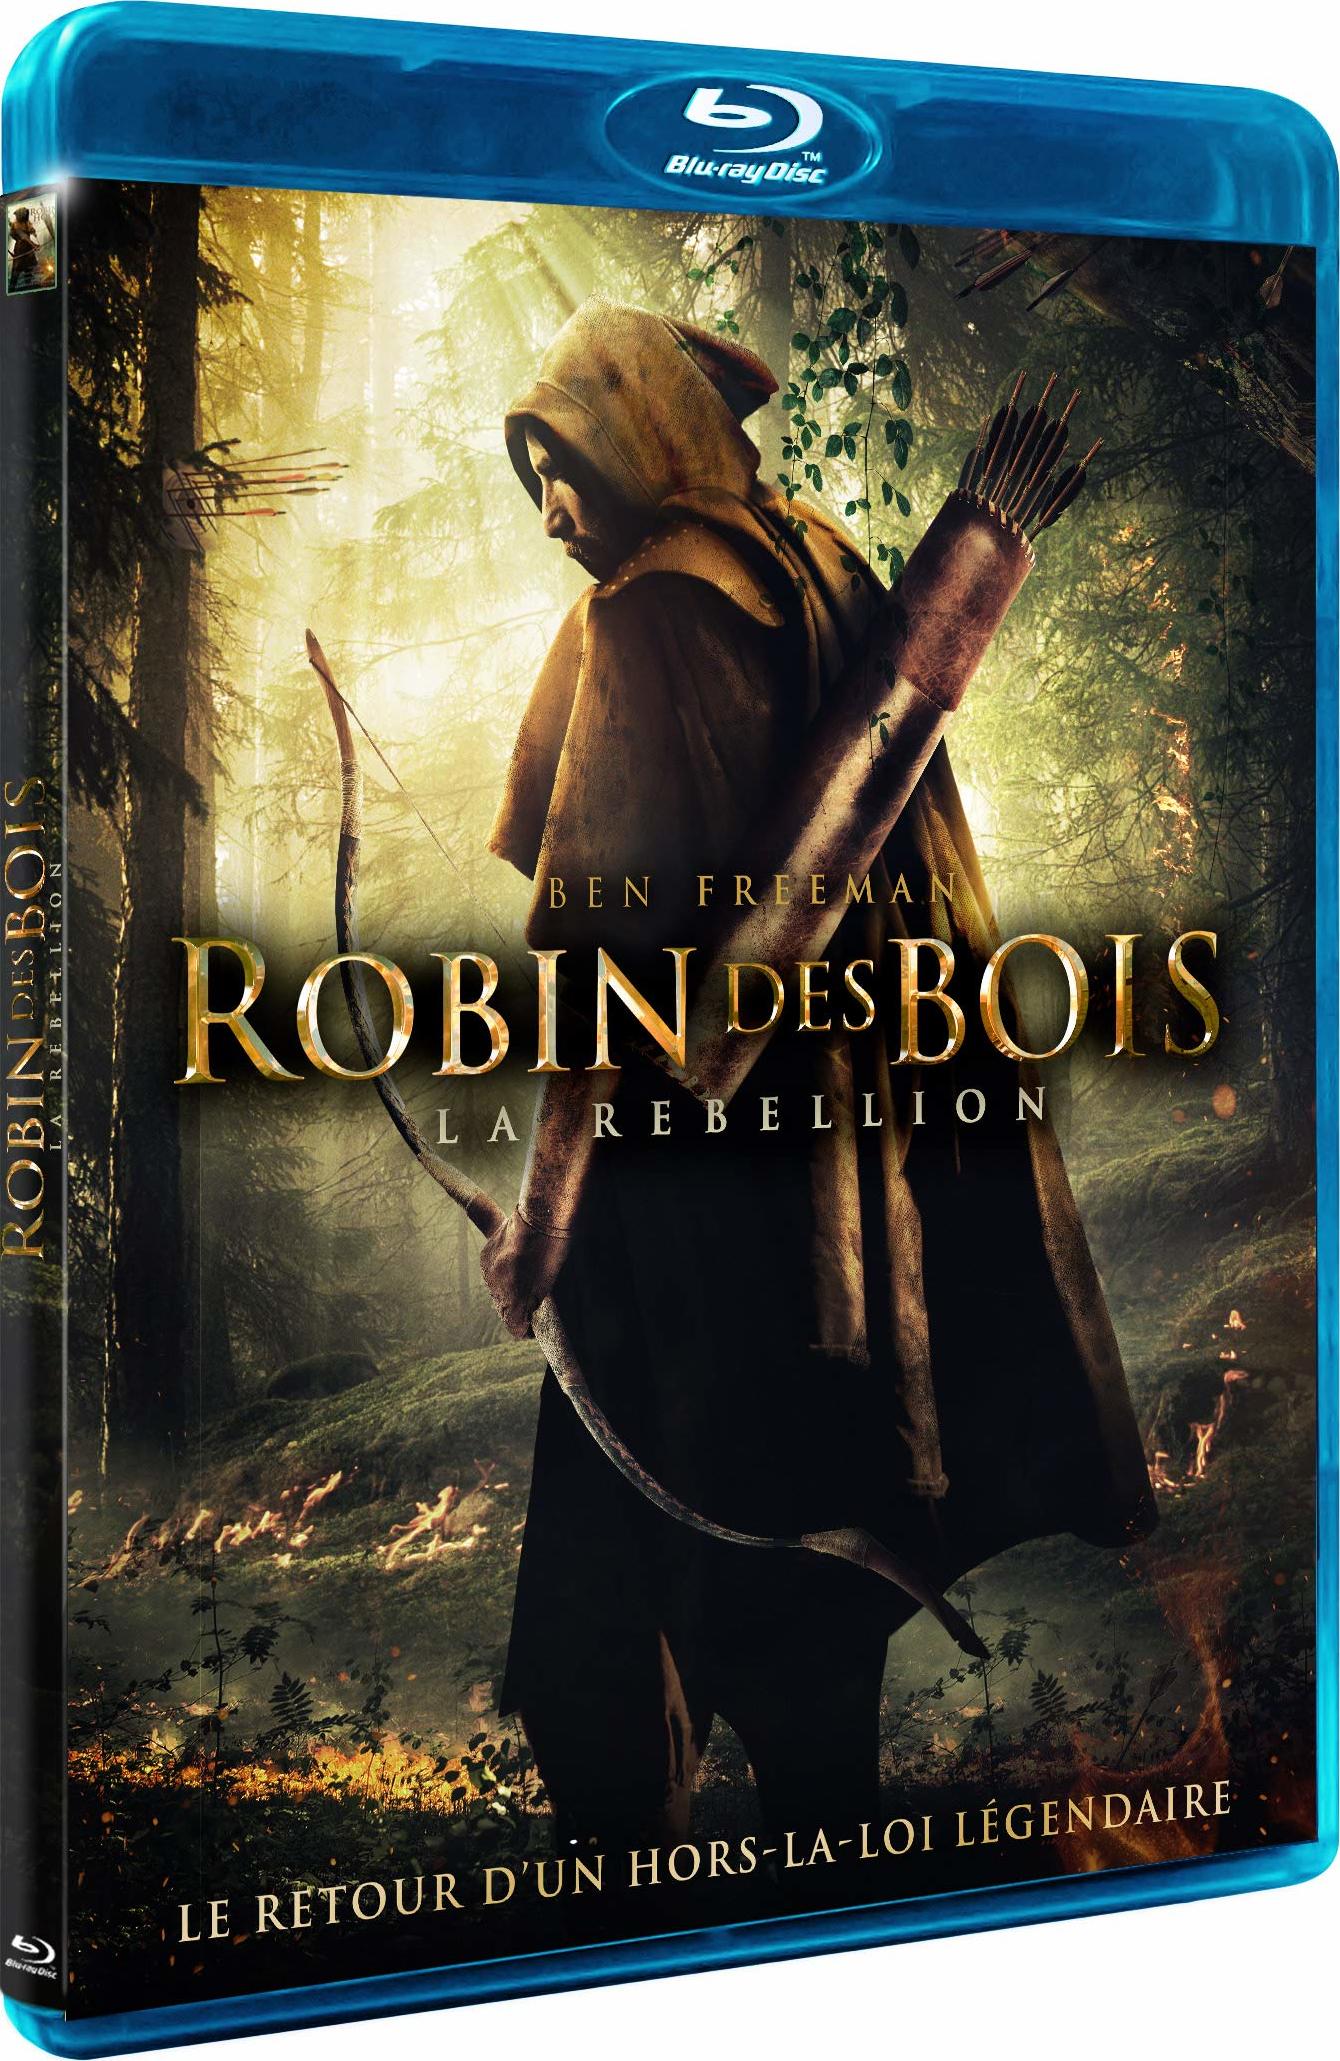 Blu-ray. Робин Гуд. Робин Гуд подарочное издание. Робин Гуд и непобедимый рыцарь. 391 Робин Гуд. Робин гуд восстание 2018